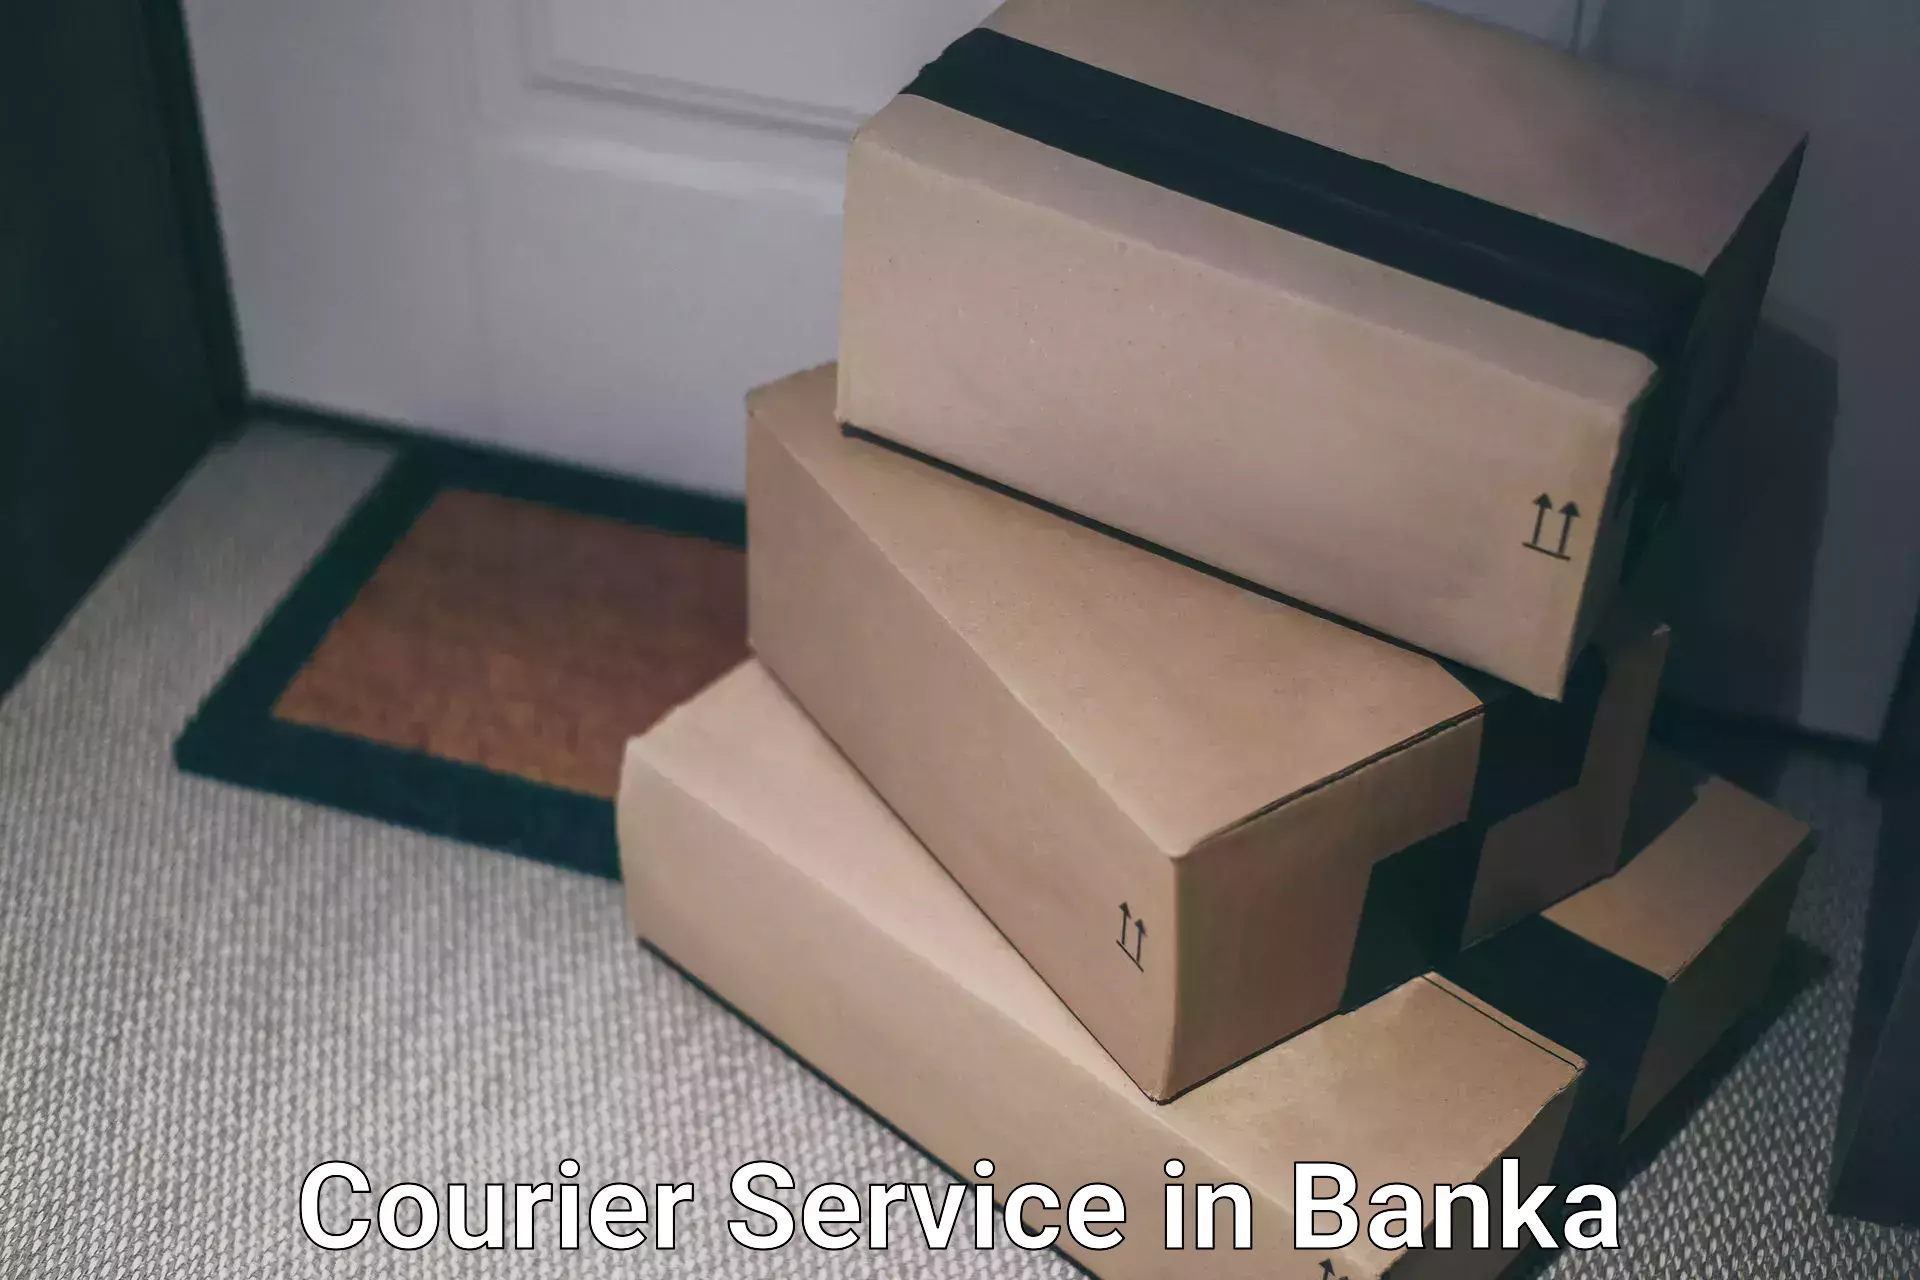 Bulk shipping discounts in Banka